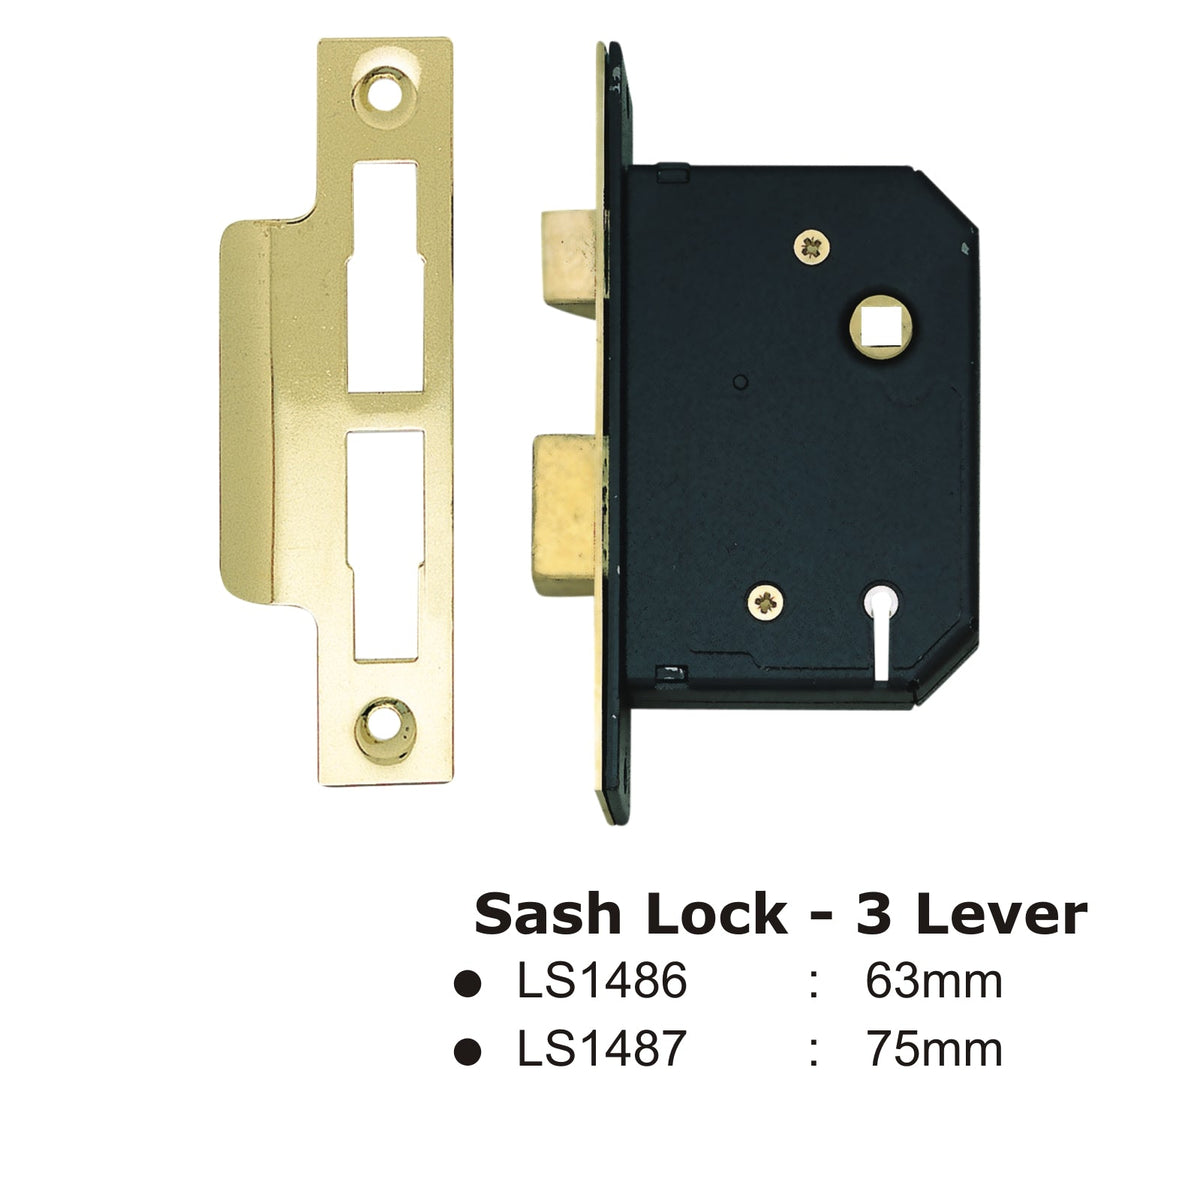 3 Lever Sash Lock - 75mm